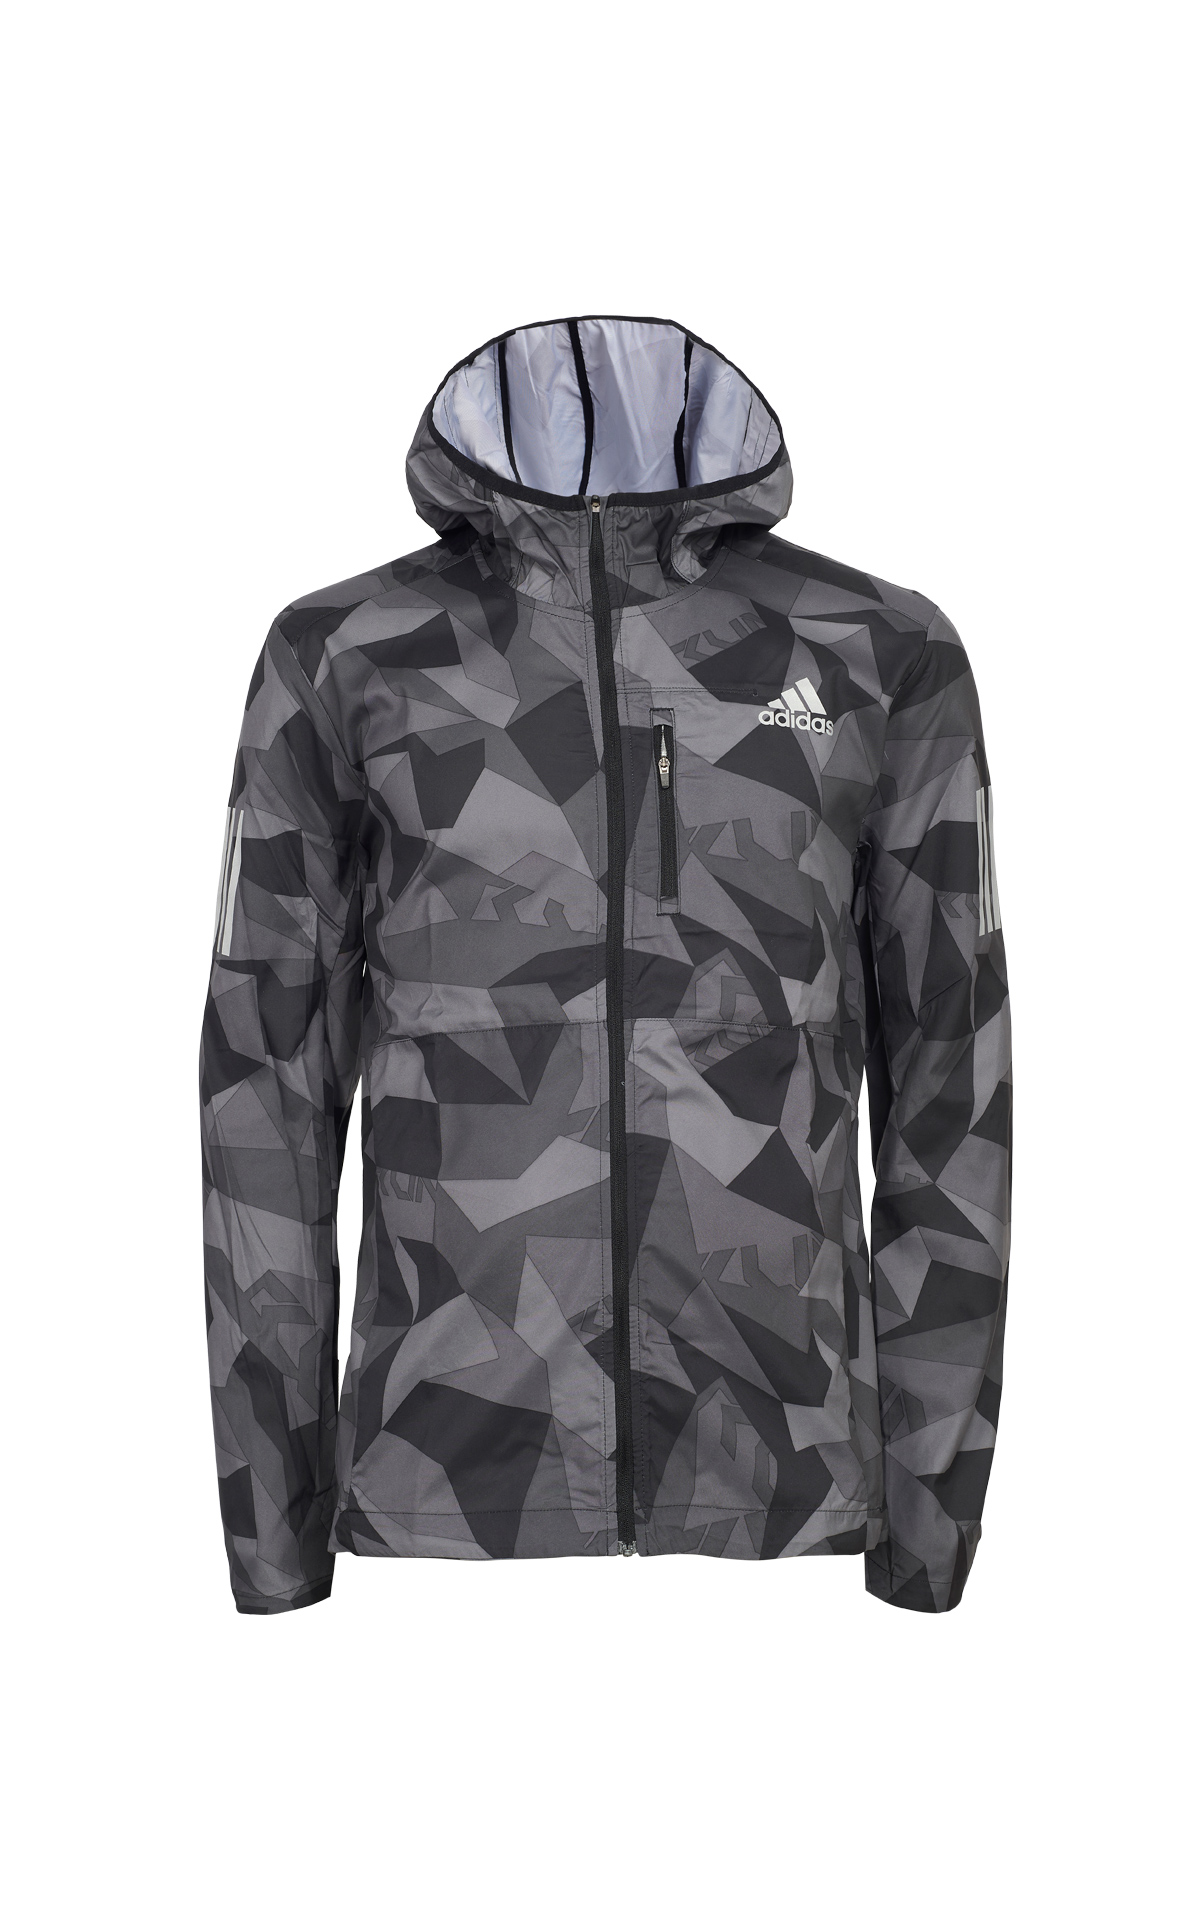 Black and grey printed jacket adidas